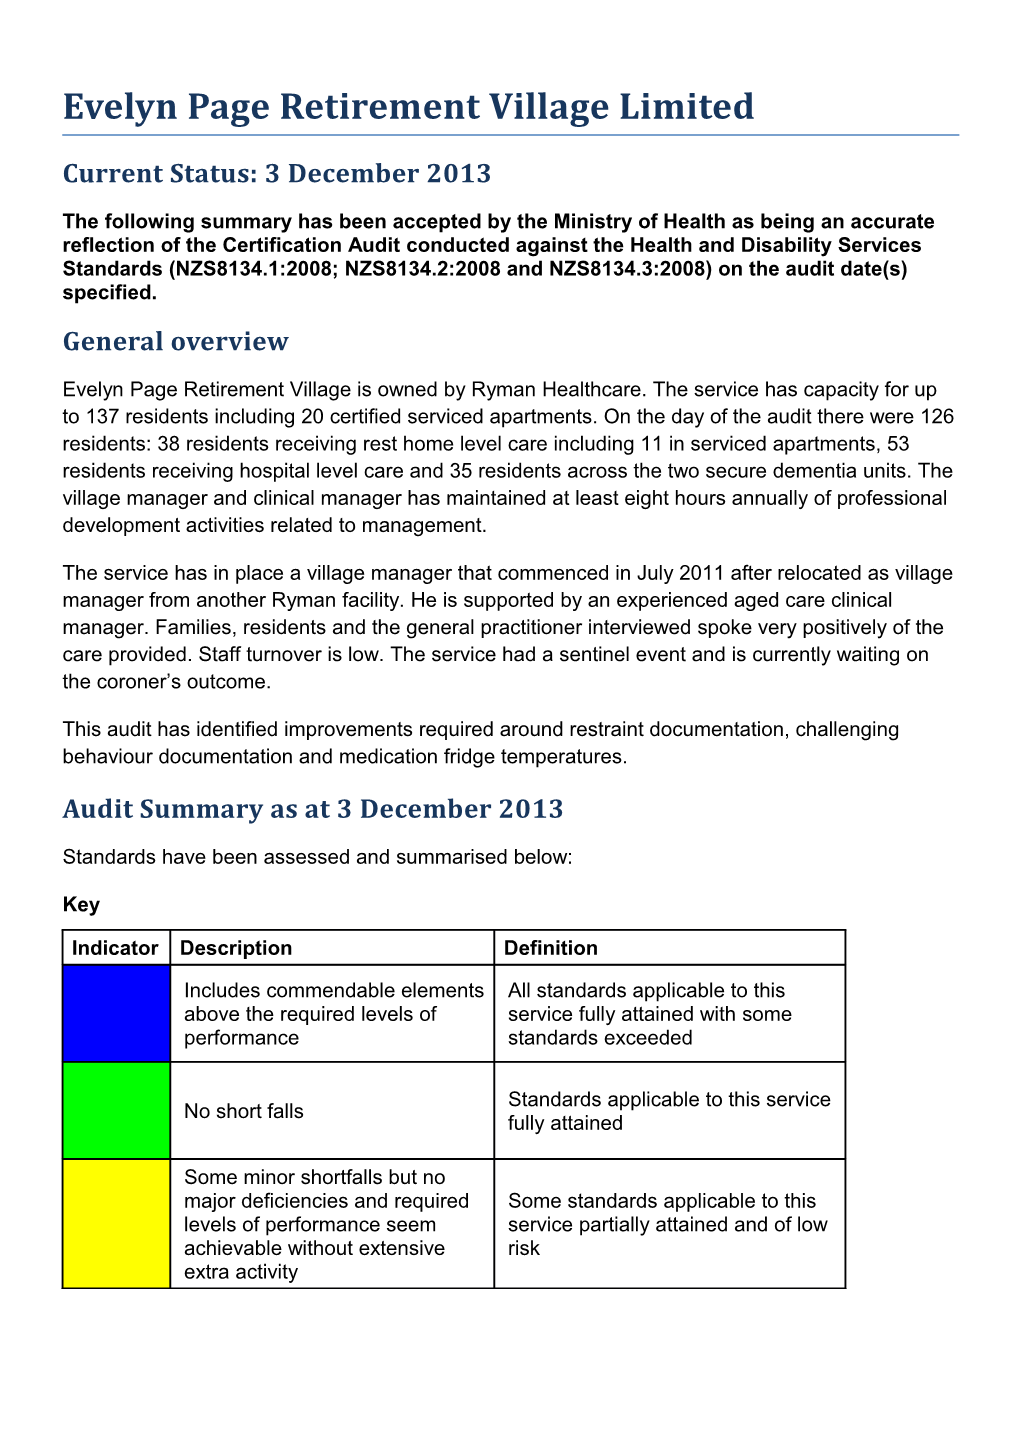 Certificaiton Audit Summary s2